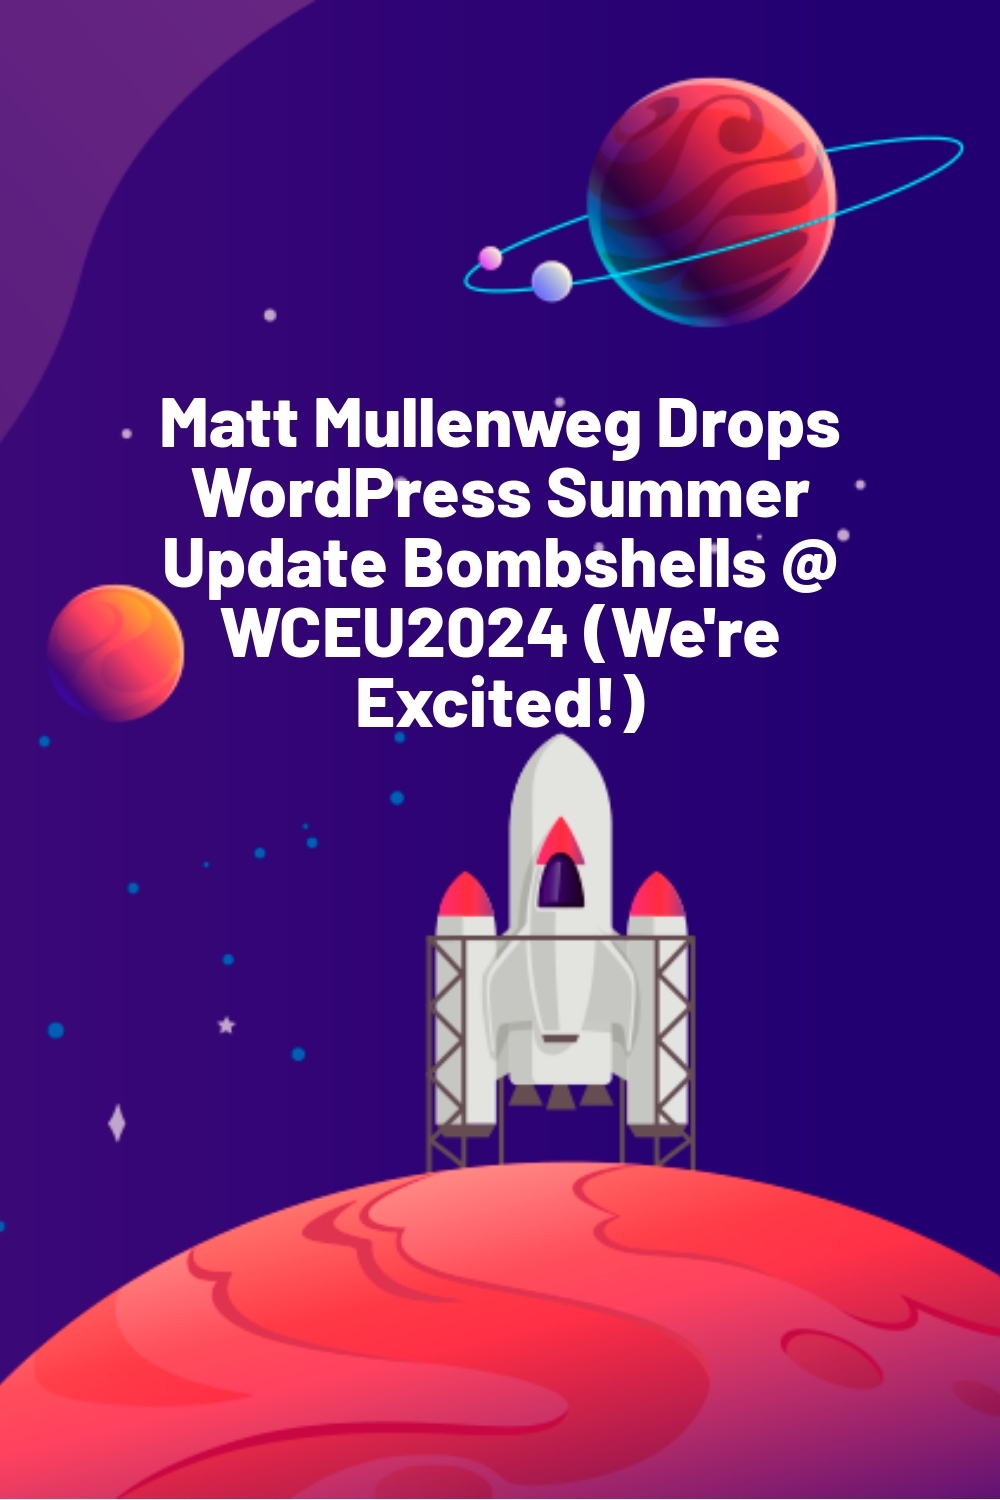 Matt Mullenweg Drops WordPress Summer Update Bombshells @ WCEU2024 (We’re Excited!)